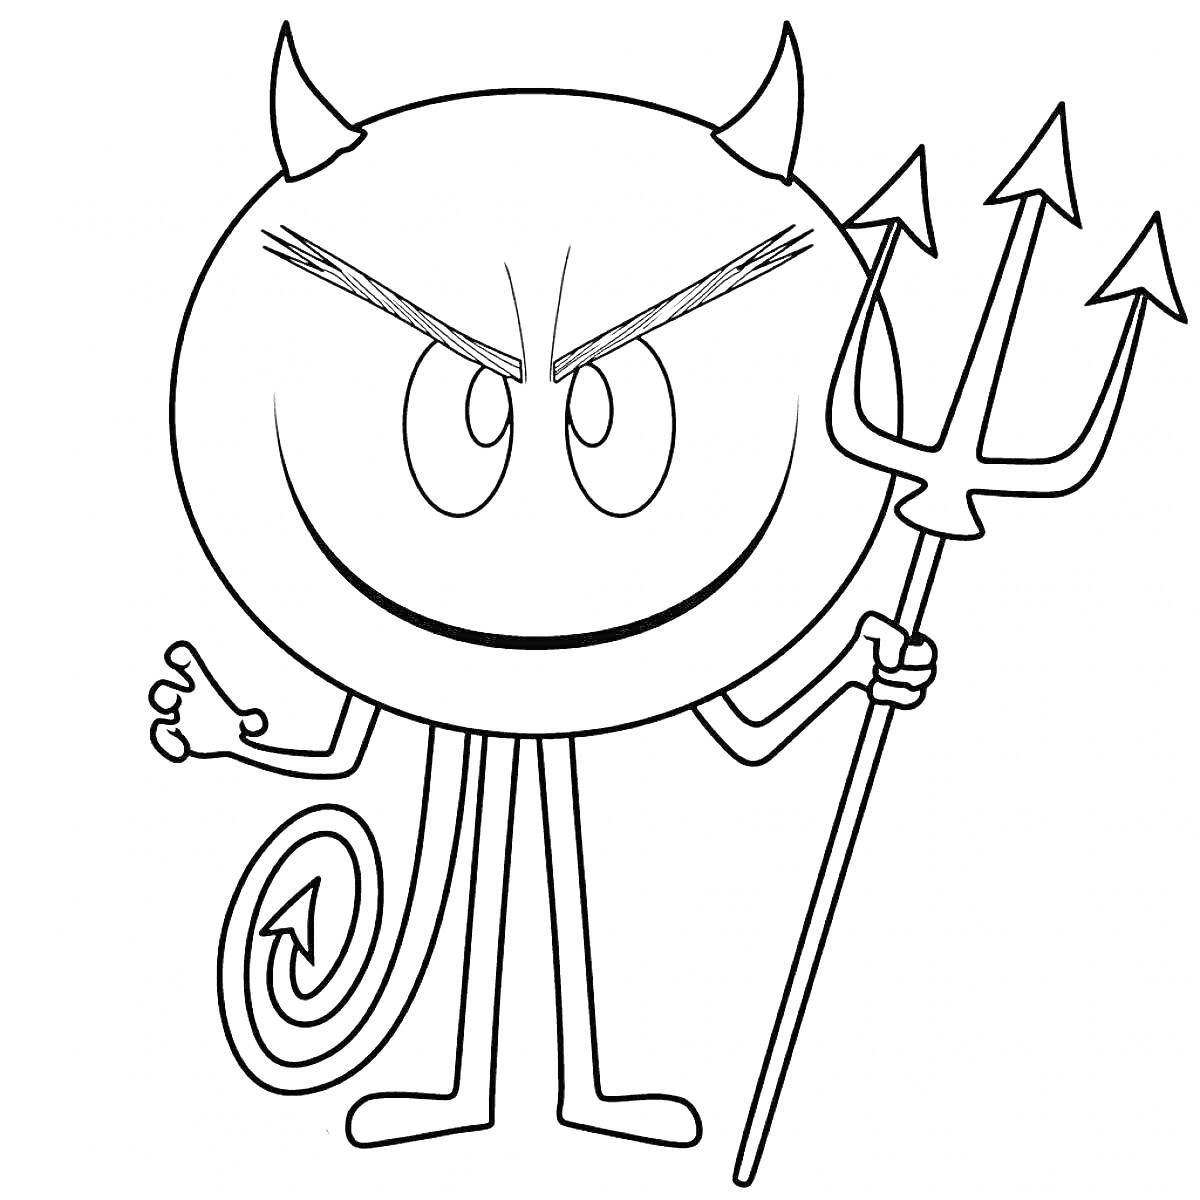 Раскраска Эмоджи-дьявол, улыбающийся с трезубцем в руке и хвостом в виде спирали